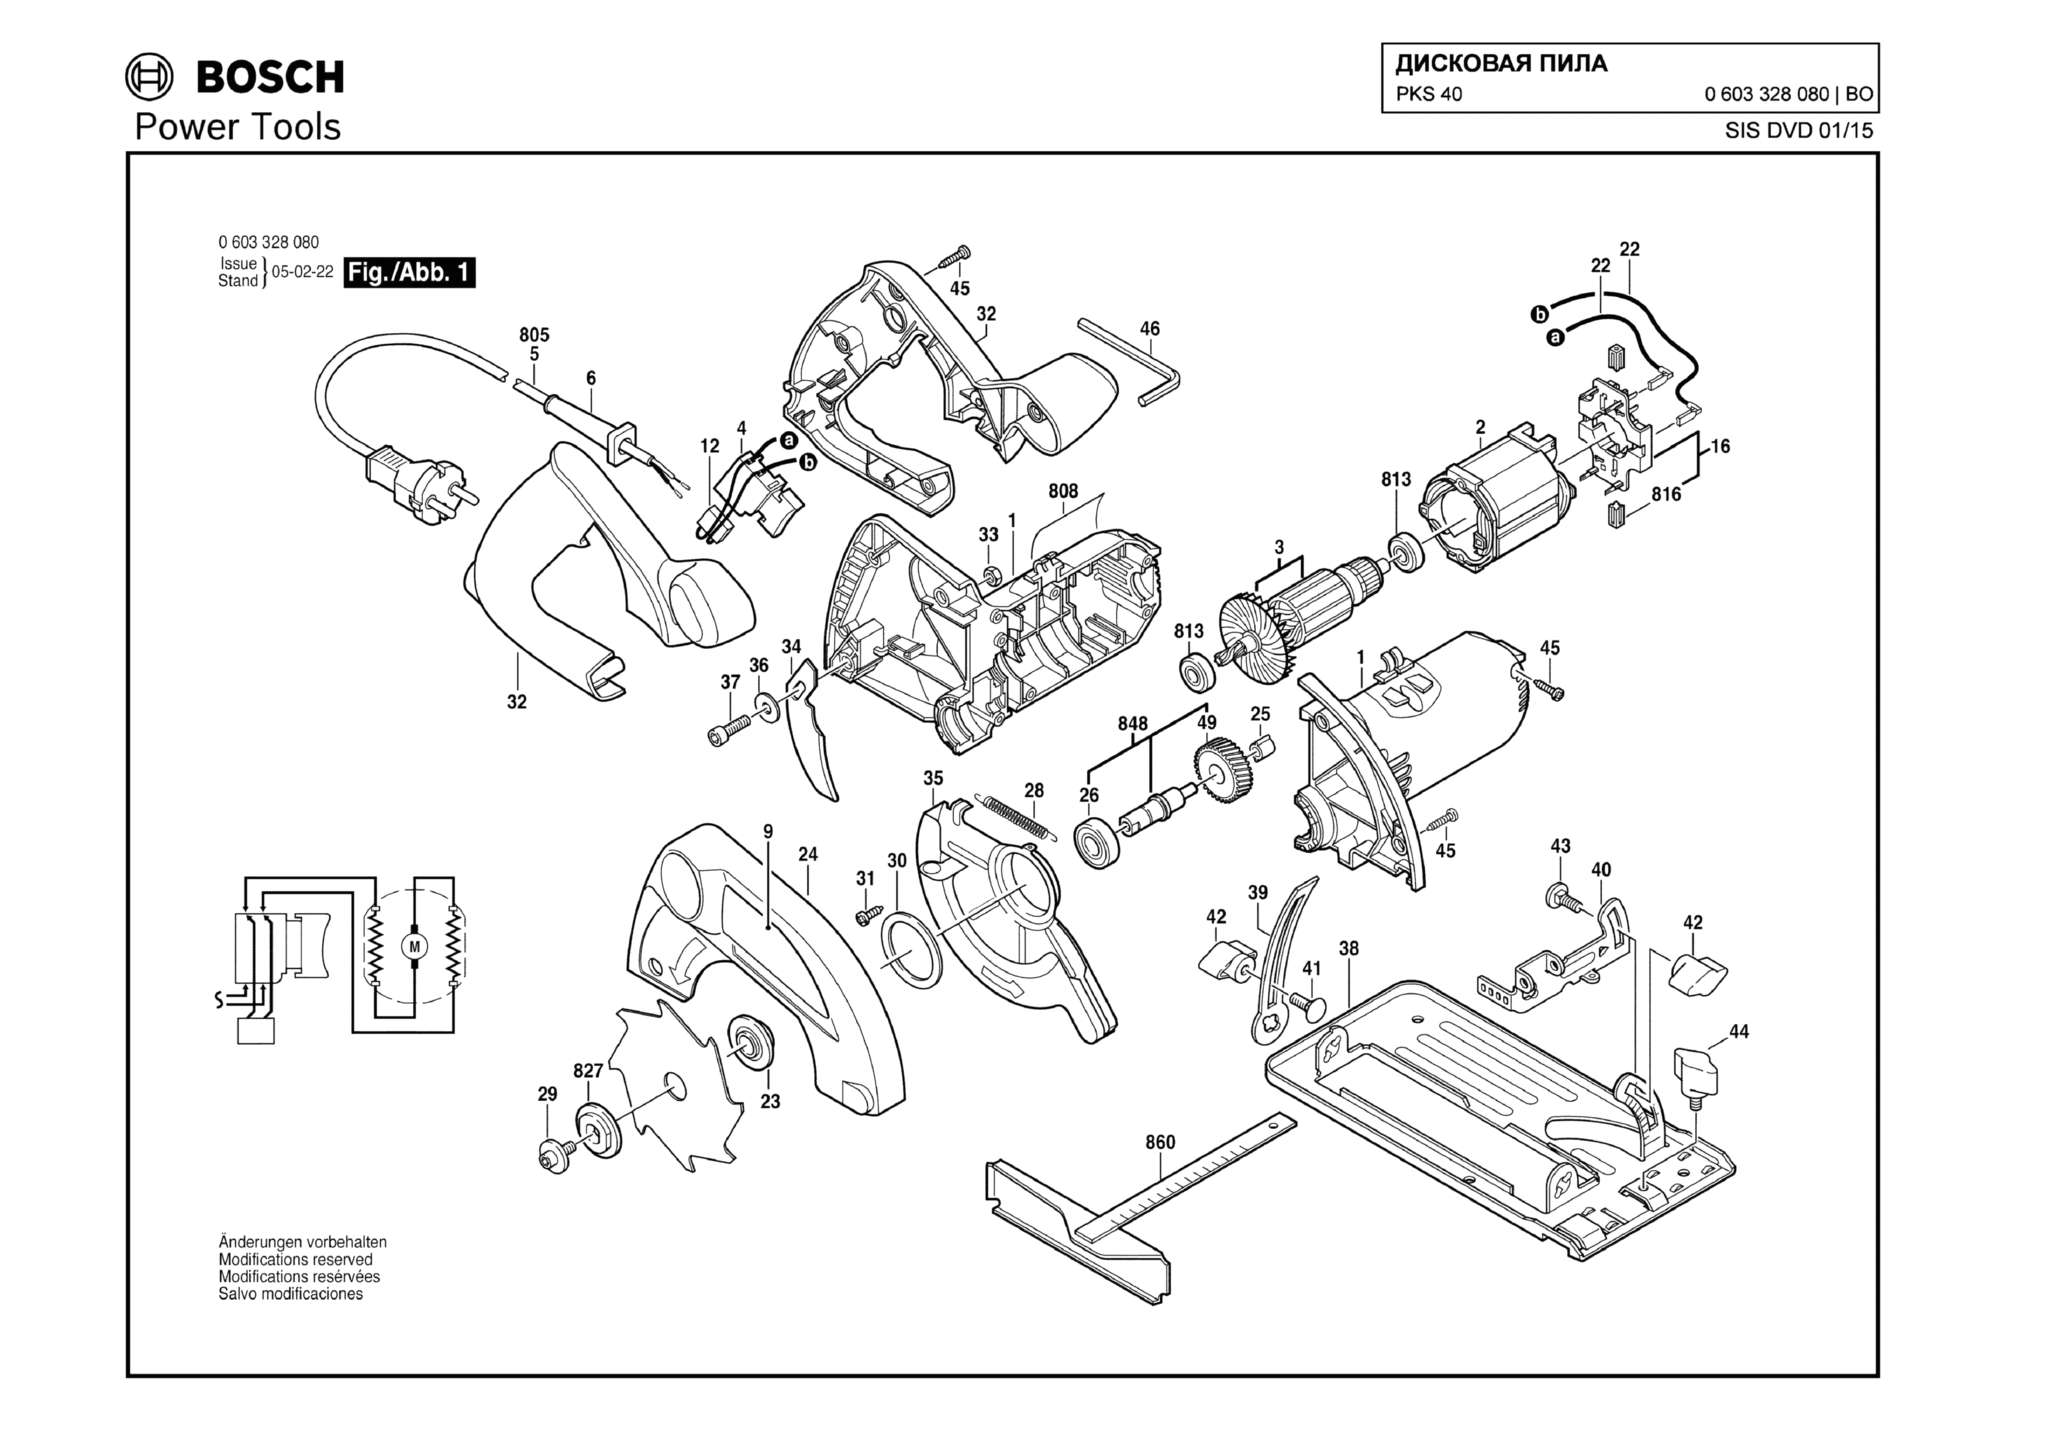 Запчасти, схема и деталировка Bosch PKS 40 (ТИП 0603328080)